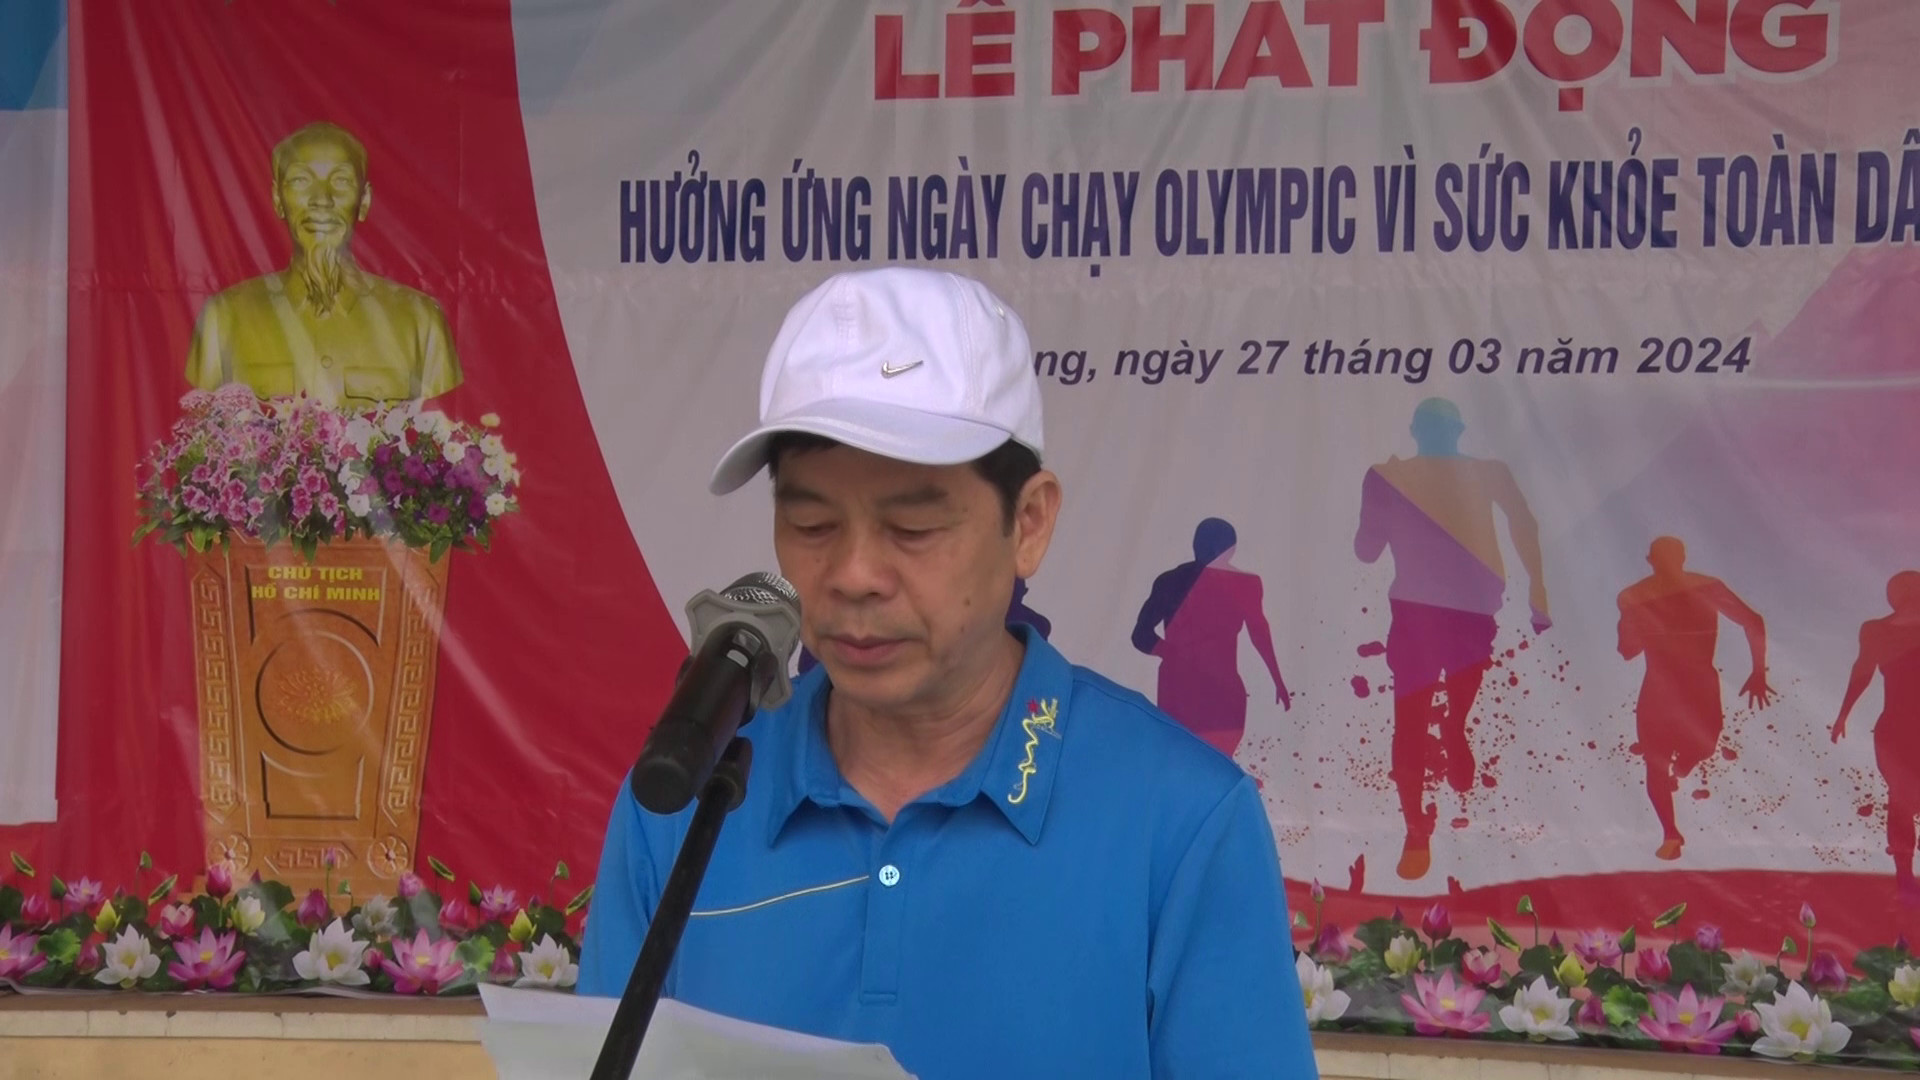 Đc Hoàng Minh Nhất Phó chủ tịch UBND huyện phát biểu khai mạc